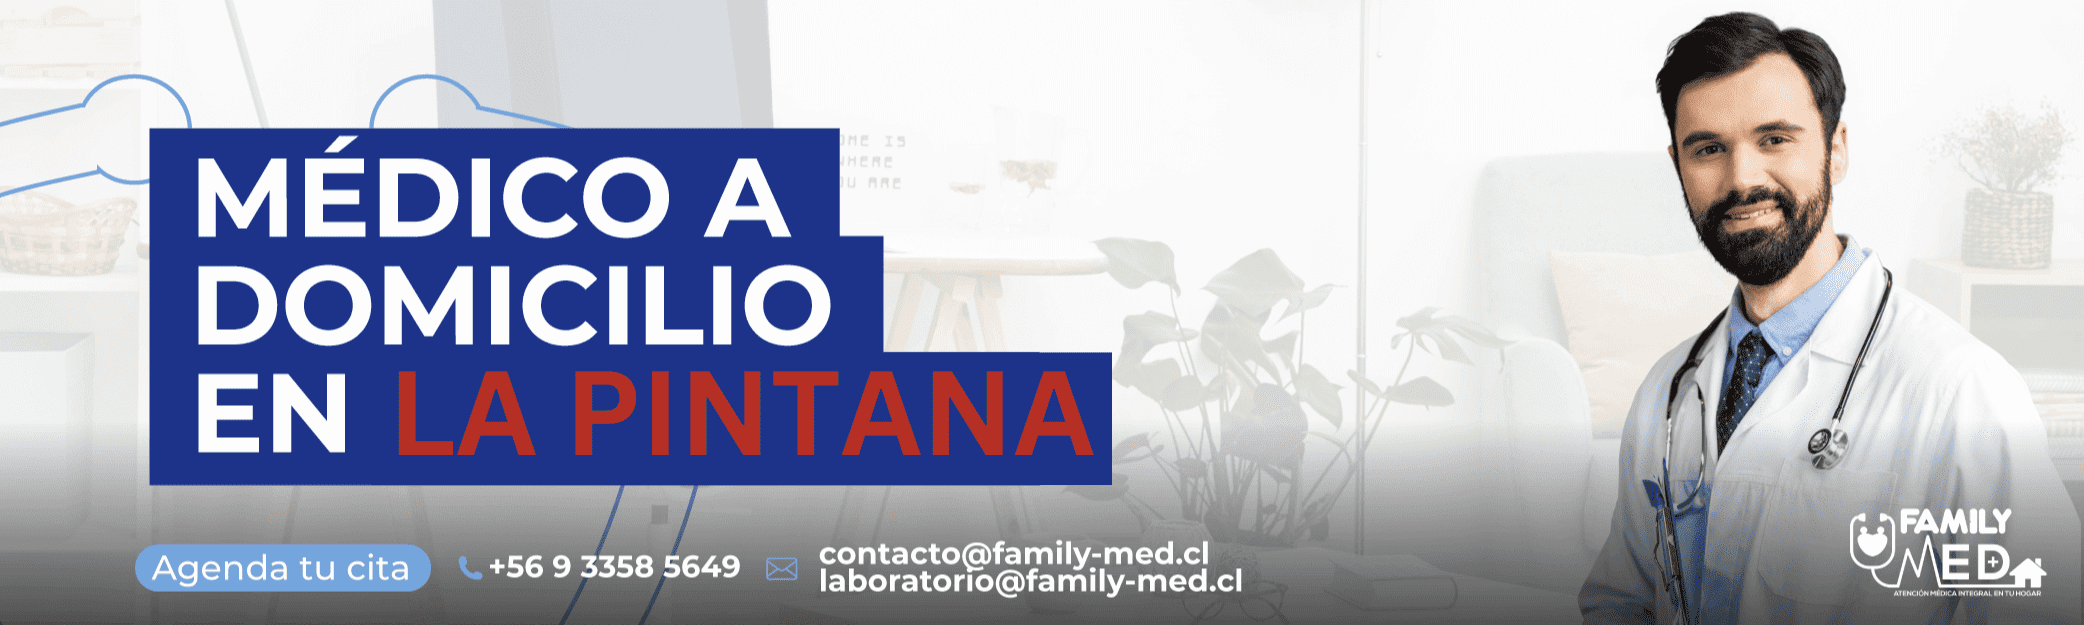 Banner de servicio medico a domicilio en la comuna de La Pintana